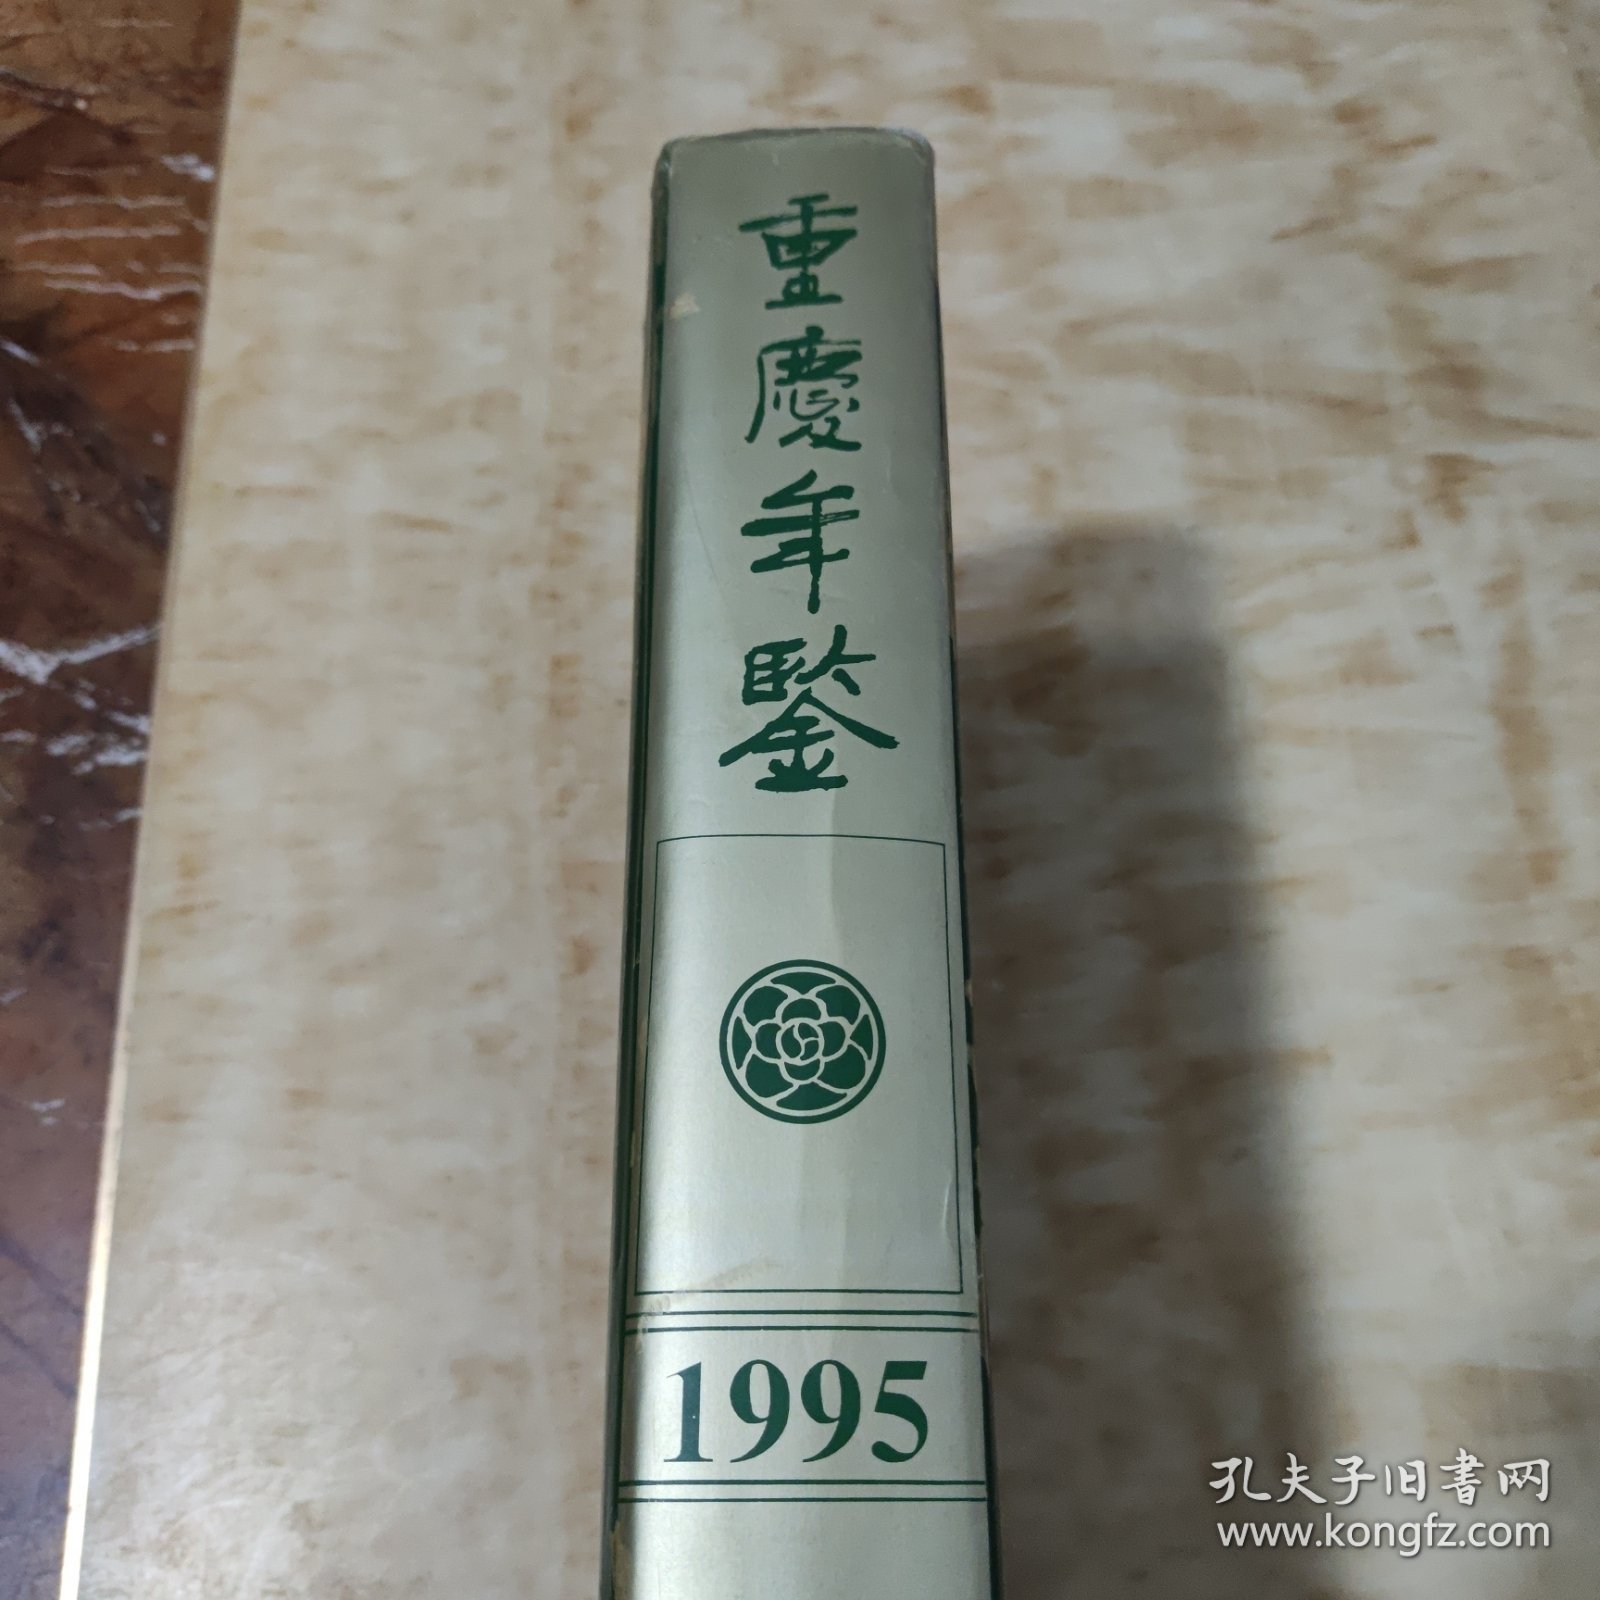 重庆年鉴 1995